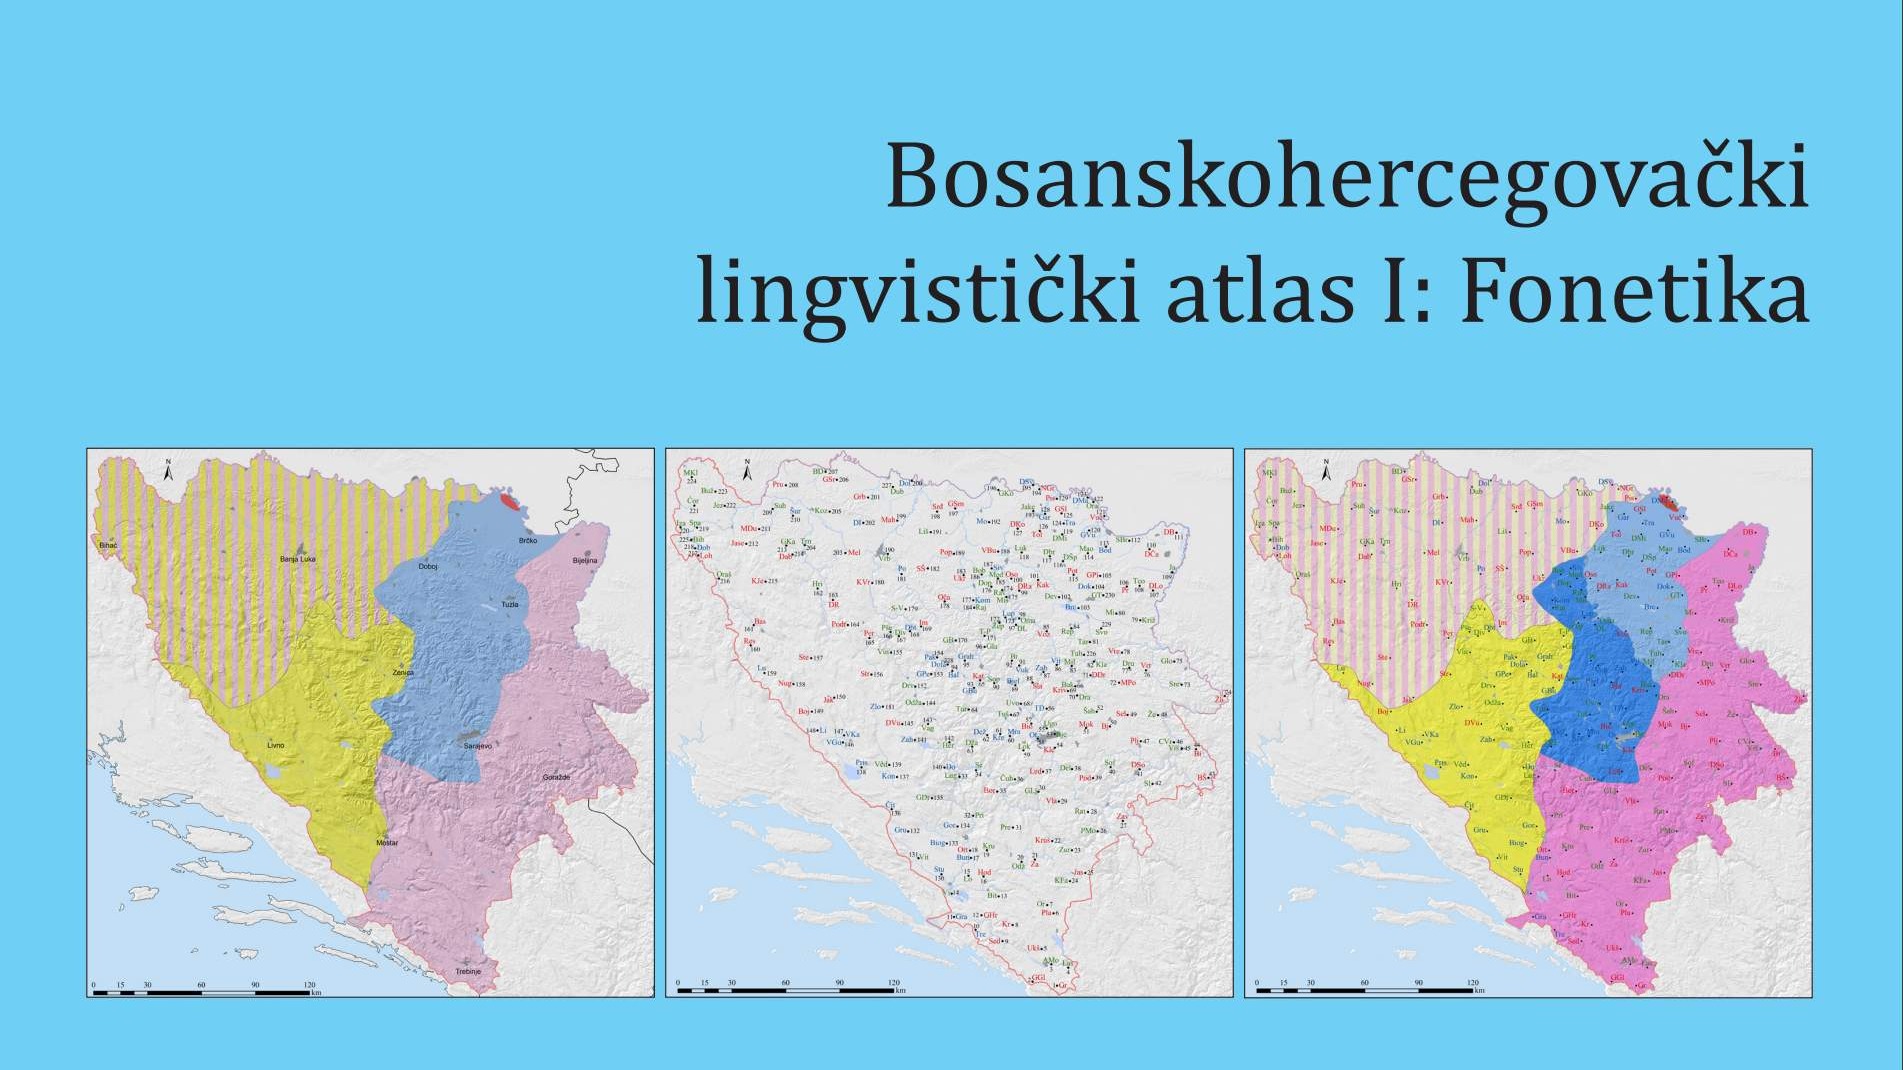 Predstavljanje 'Bosanskohercegovačkog lingvističkog atlasa' u utorak na UNSA